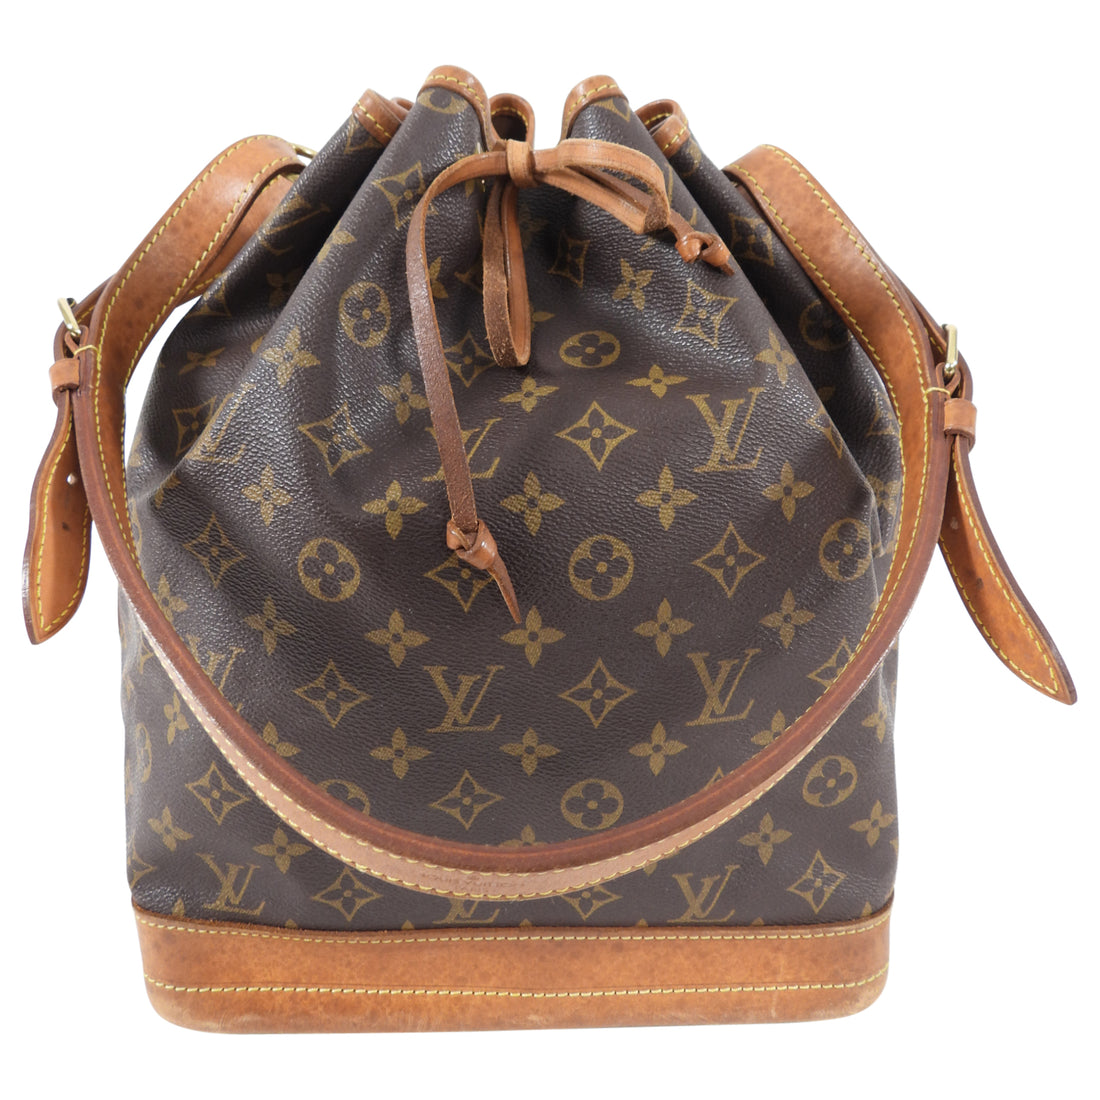 SOLD - Louis Vuitton vintage 1996 noe GM drawstring bag $799 on our website  at imissyouvintage.com #noebag . . #imissyouvintage…